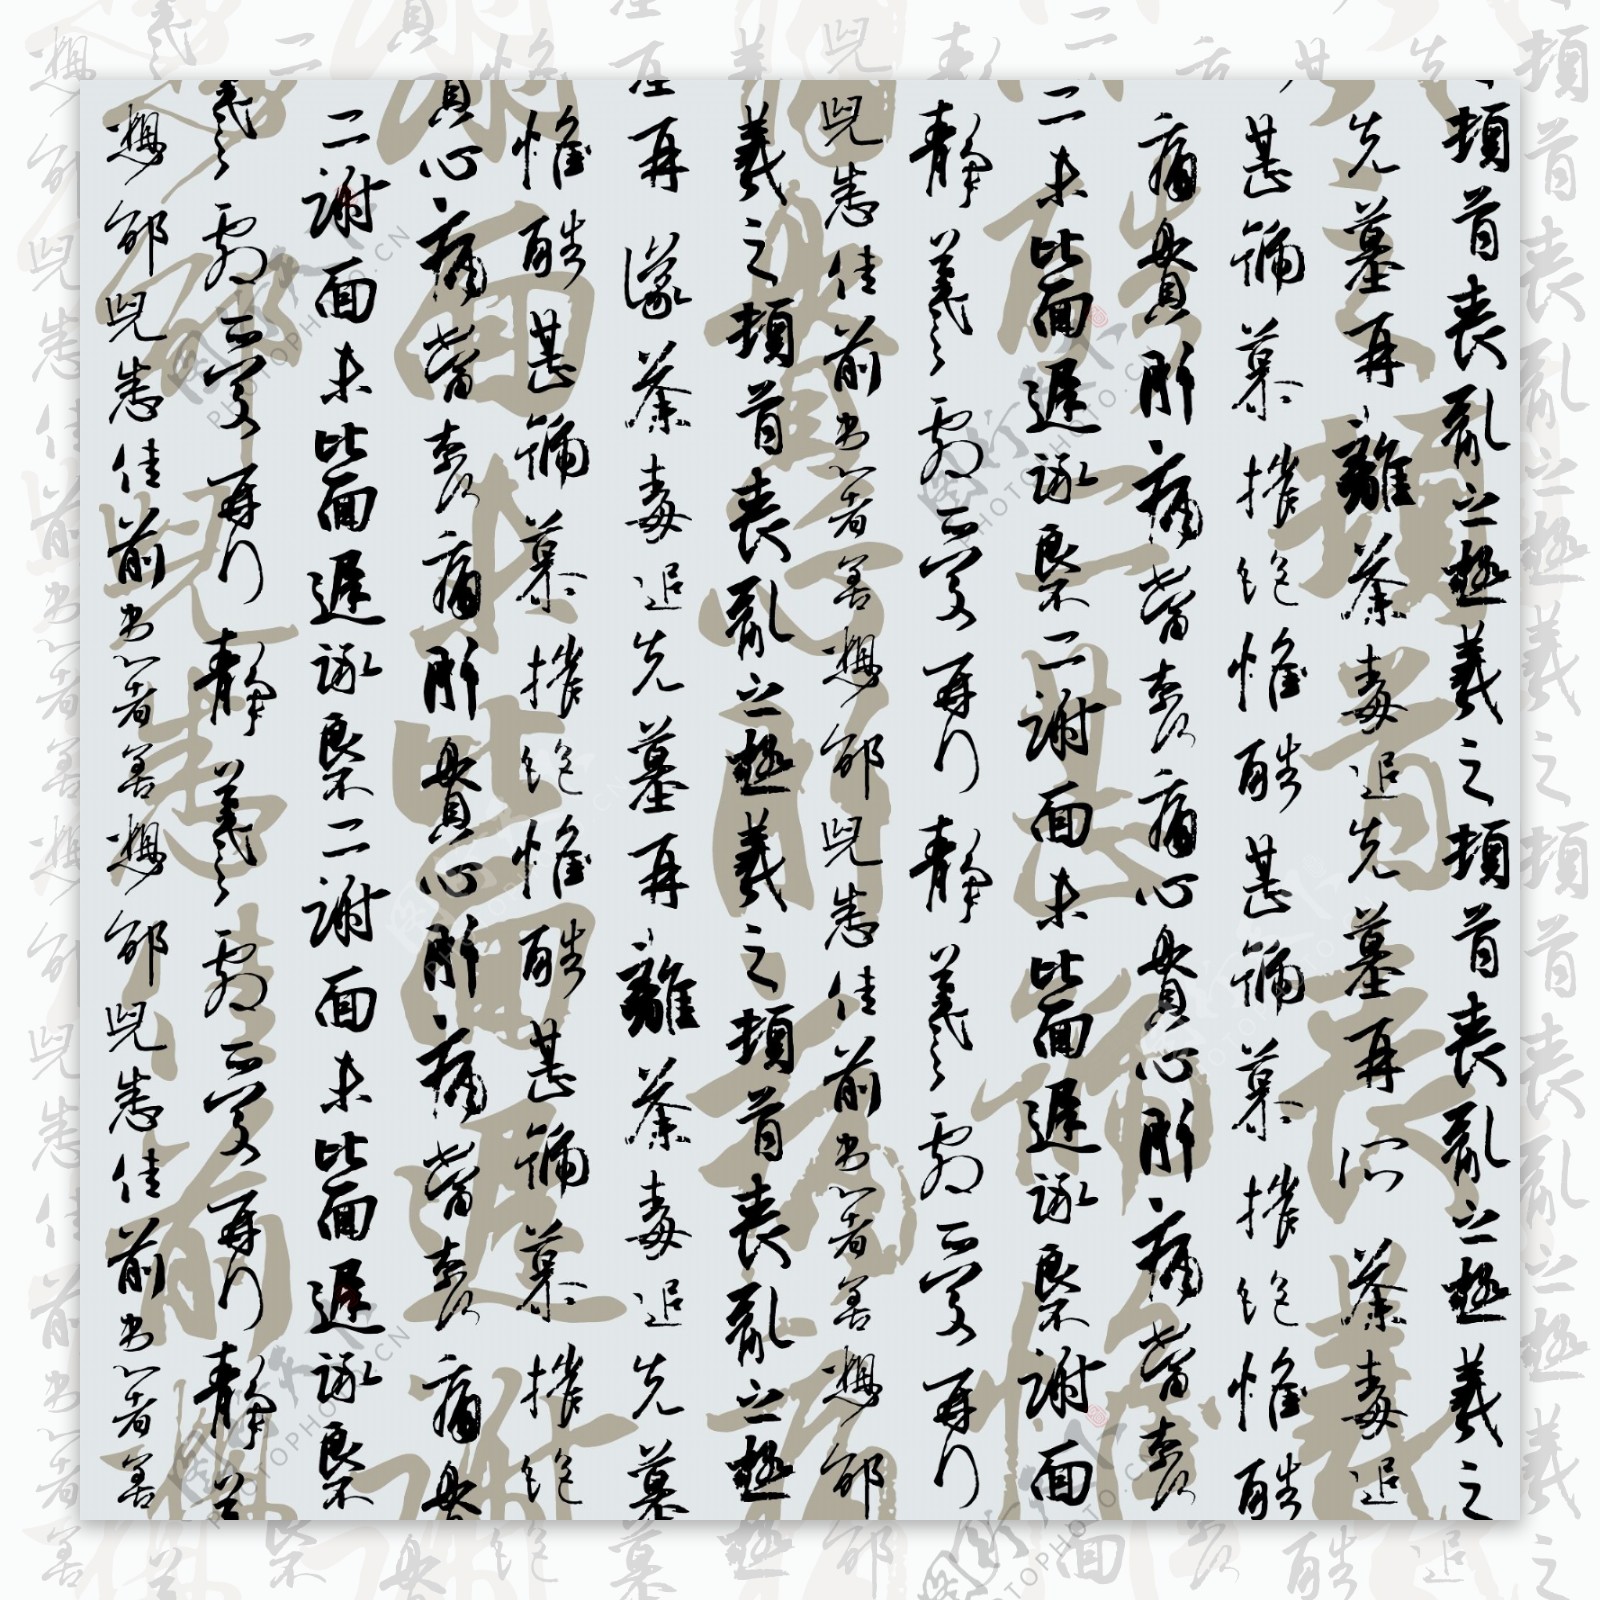 中国书法字体背景图片